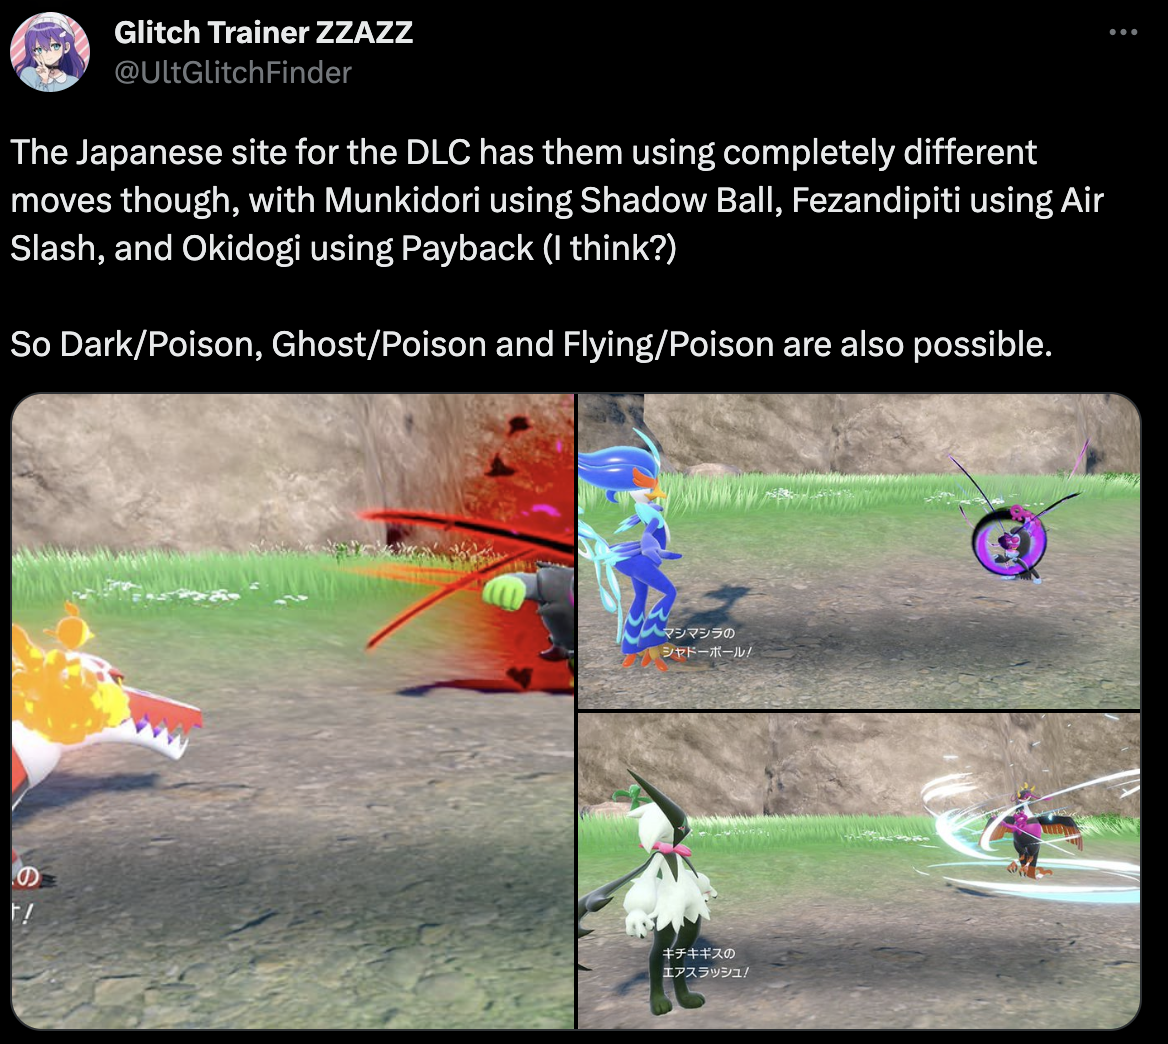 Twitter user @UltGlitchFinder showing screenshots of Okidogi using payback, Munkidori using Shadow Ball, and Fezandipiti using air slash